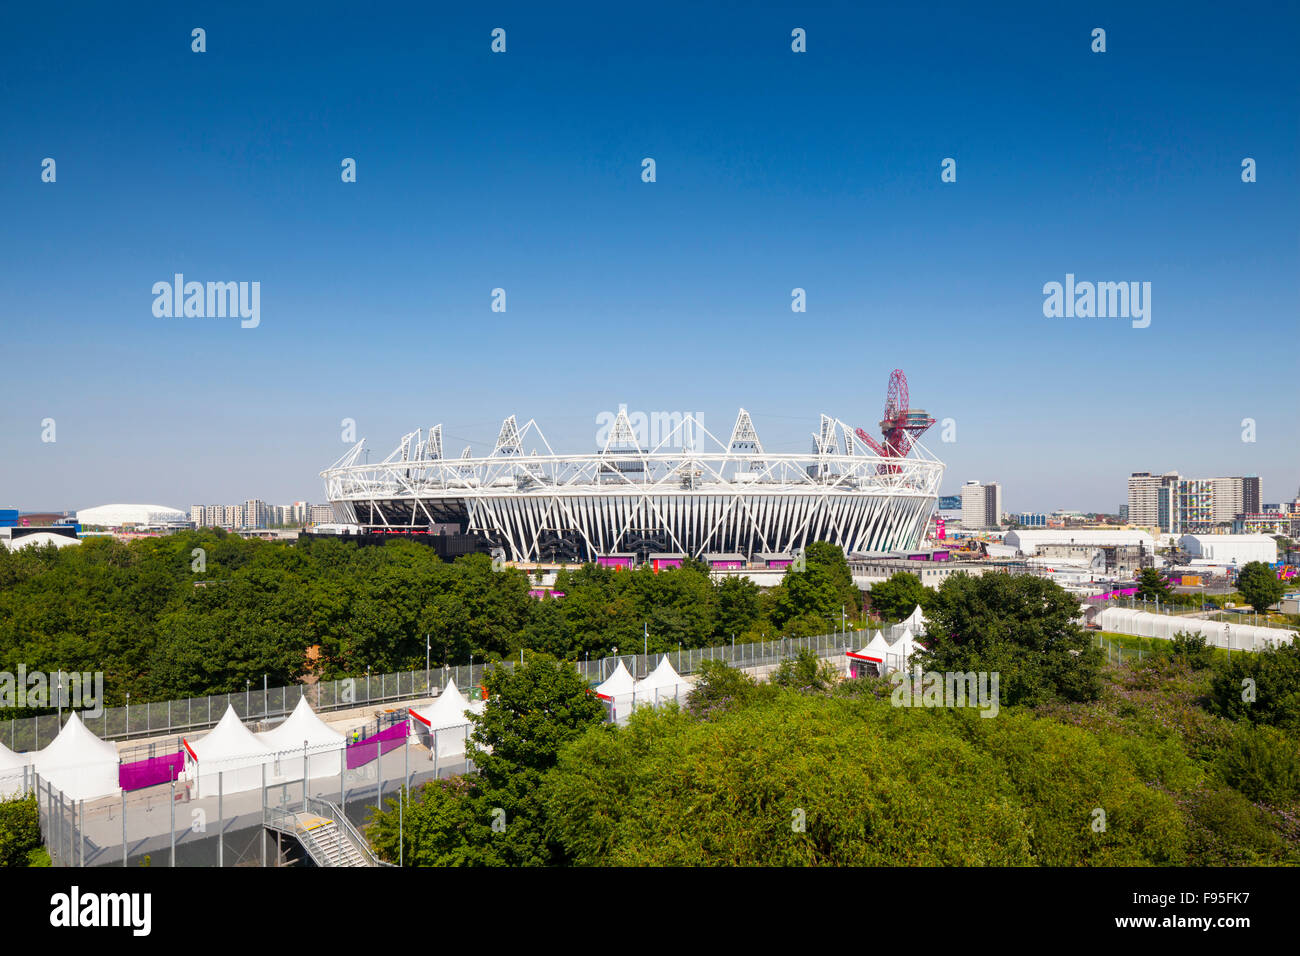 Le stade olympique de Londres est situé sur une île en forme de losange entre deux cours d'eau, situé dans le sud Banque D'Images